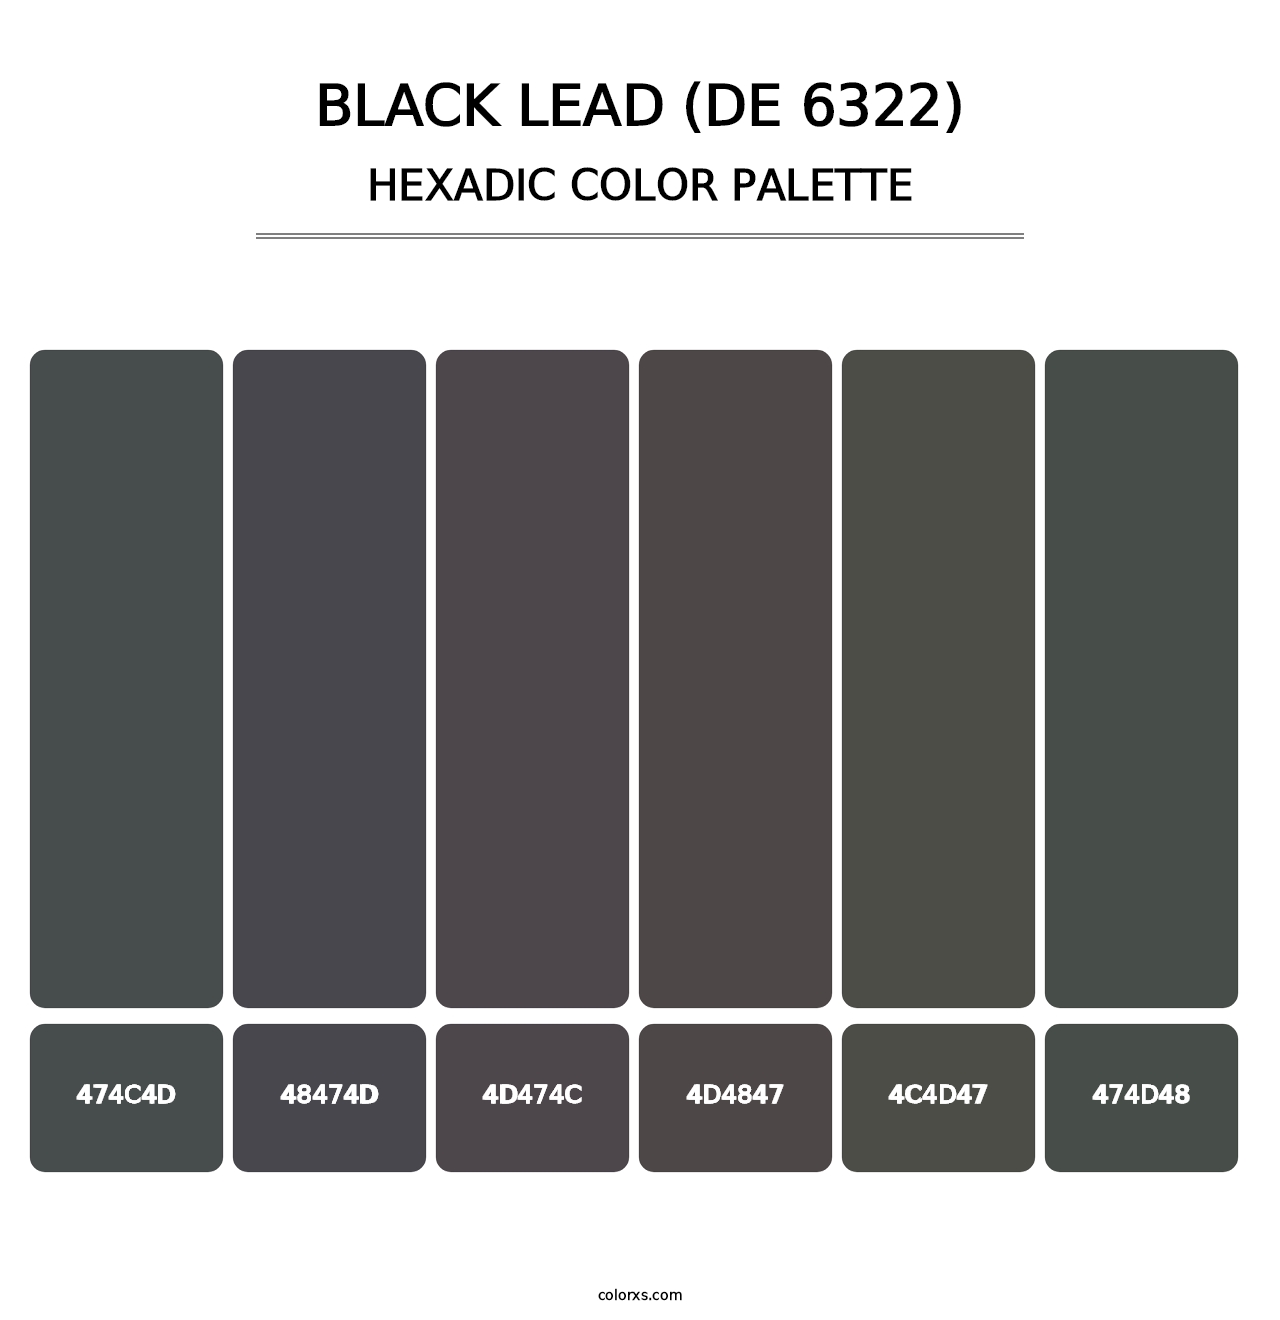 Black Lead (DE 6322) - Hexadic Color Palette